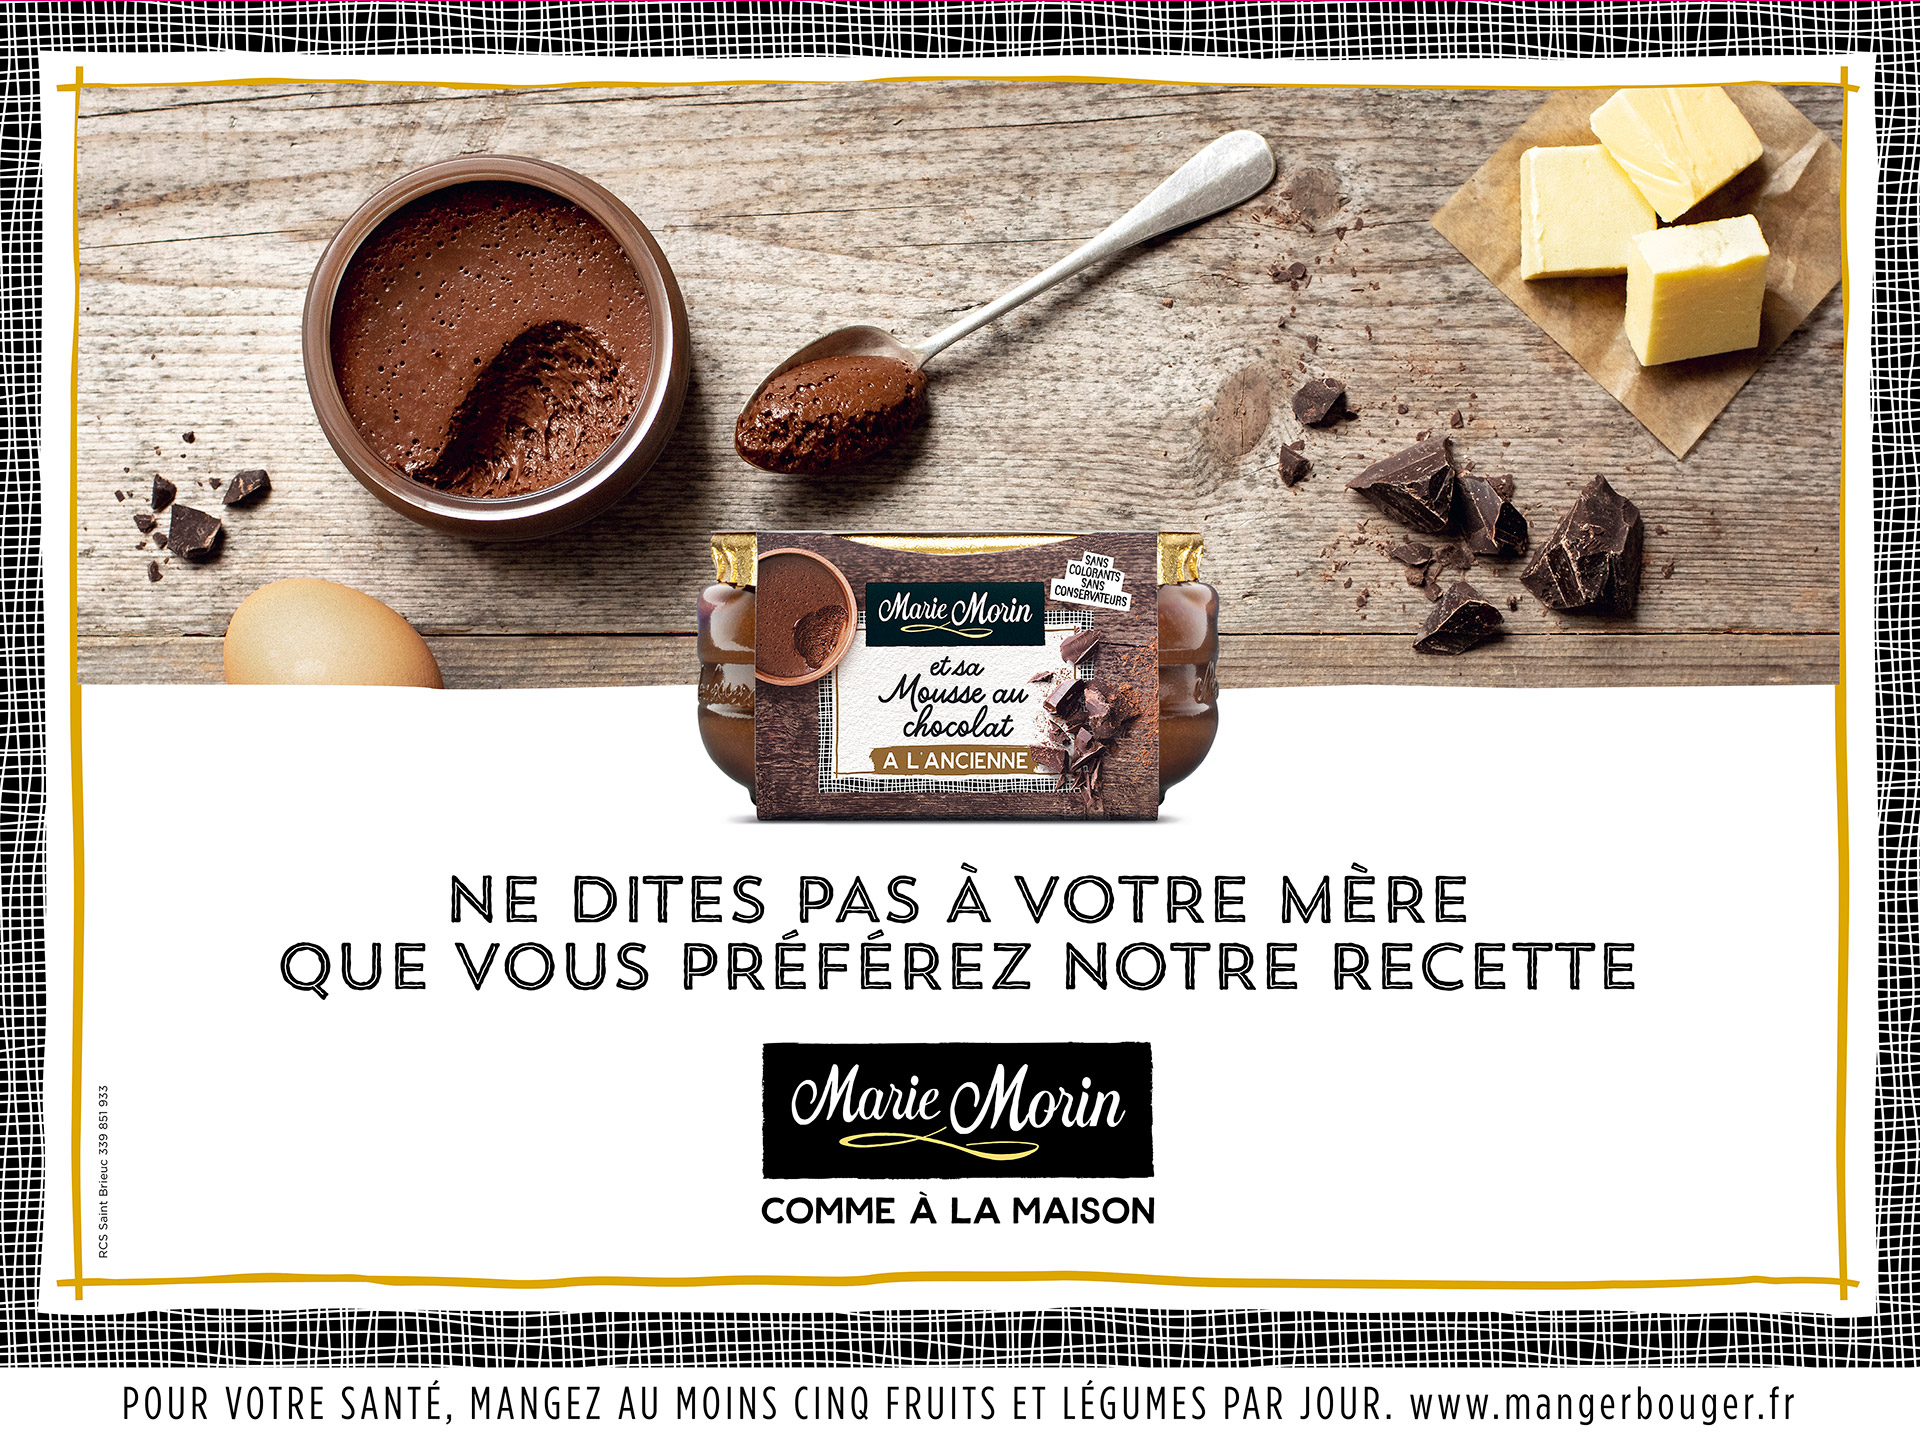 Affiche 4x3 de campagne 2019 Marie Morin (mousse au chocolat)